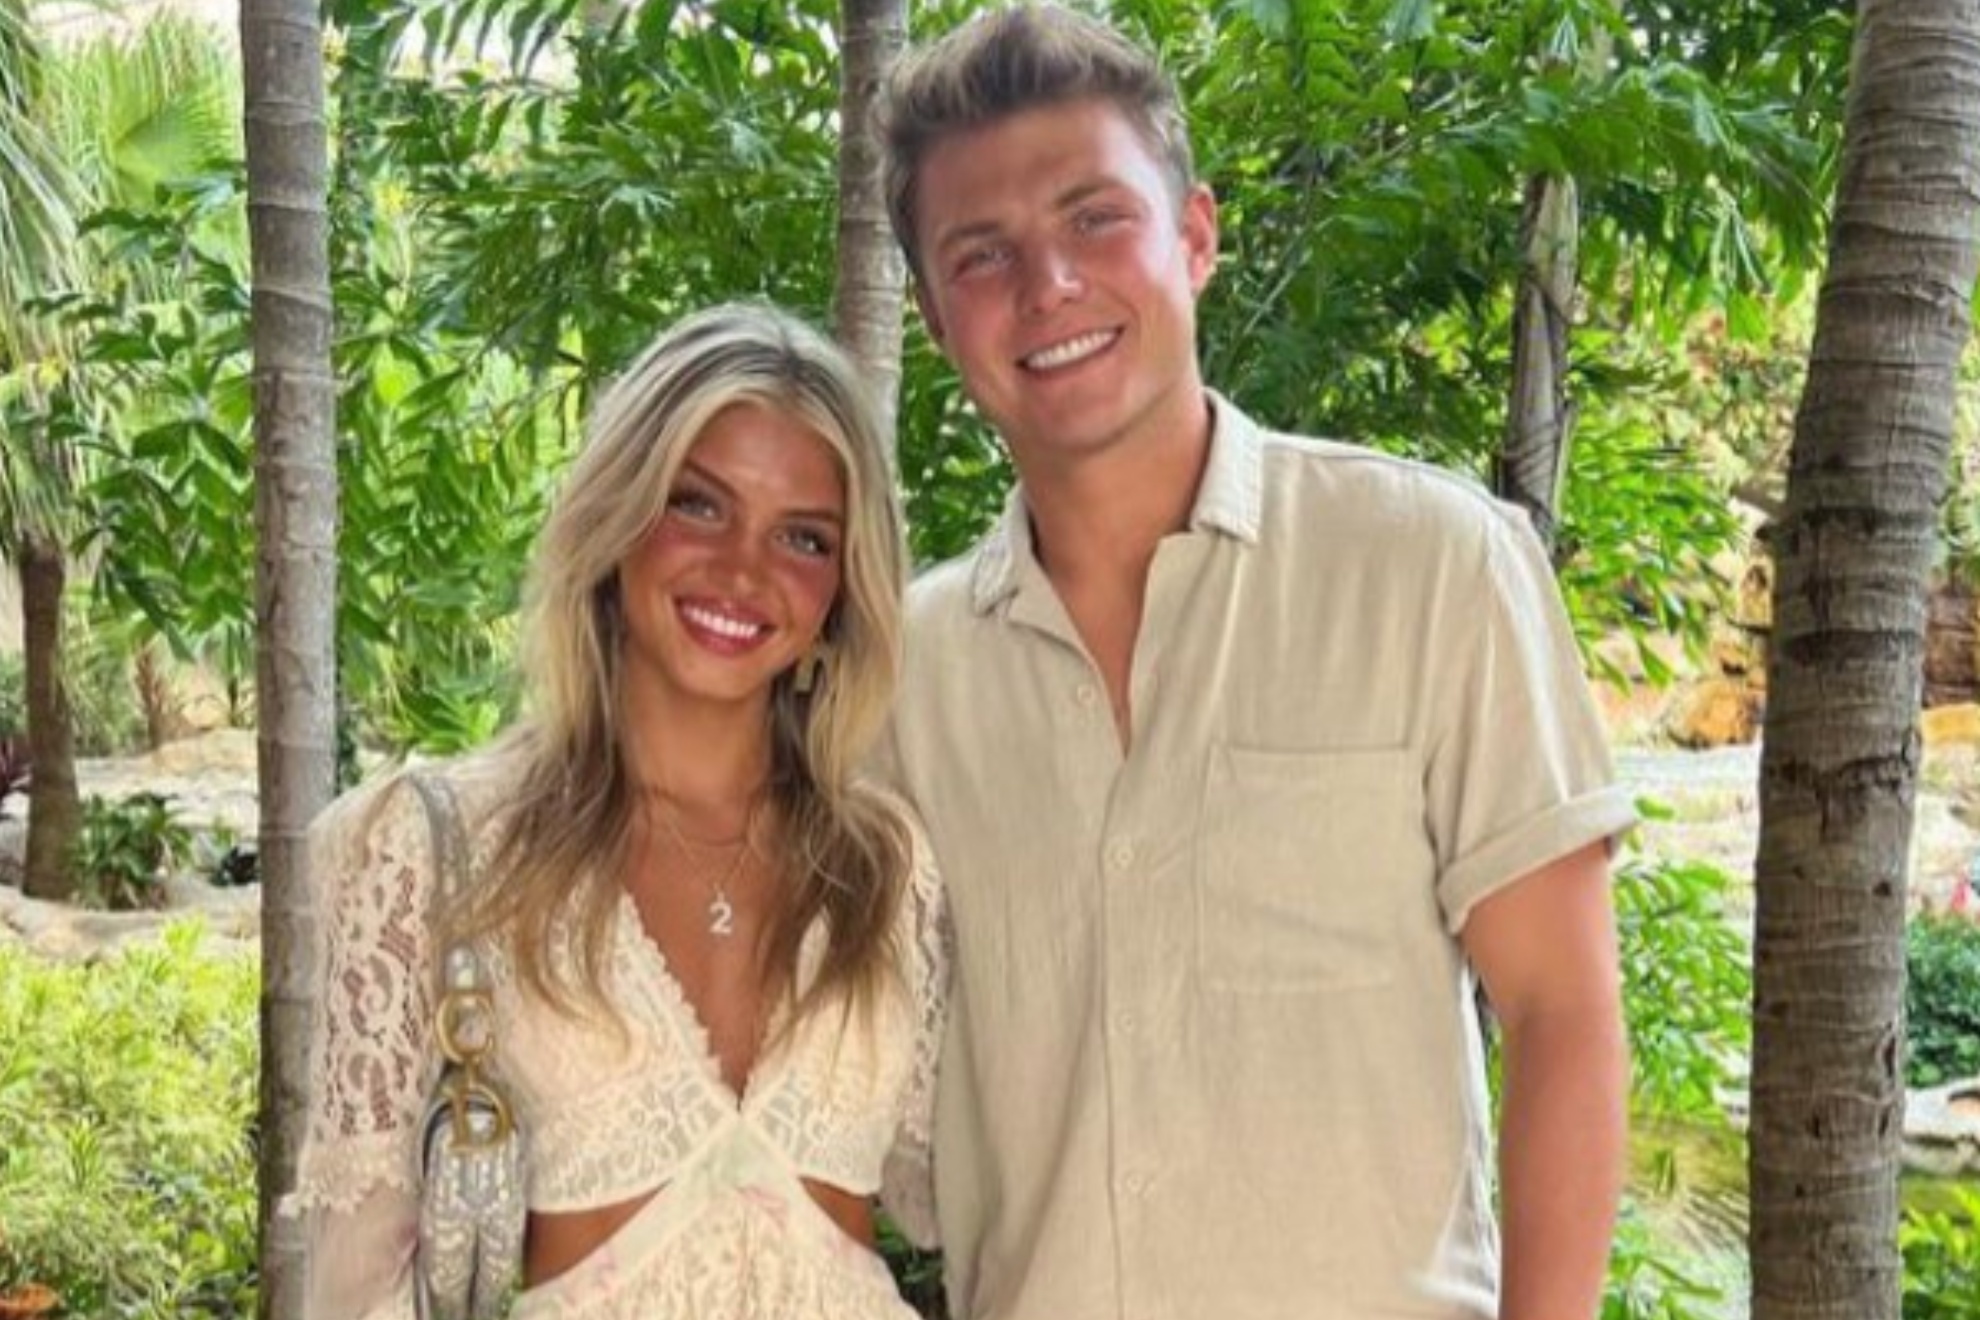 Zach Wilson with his girlfriend Nicolette Dellanno in a recent vacation